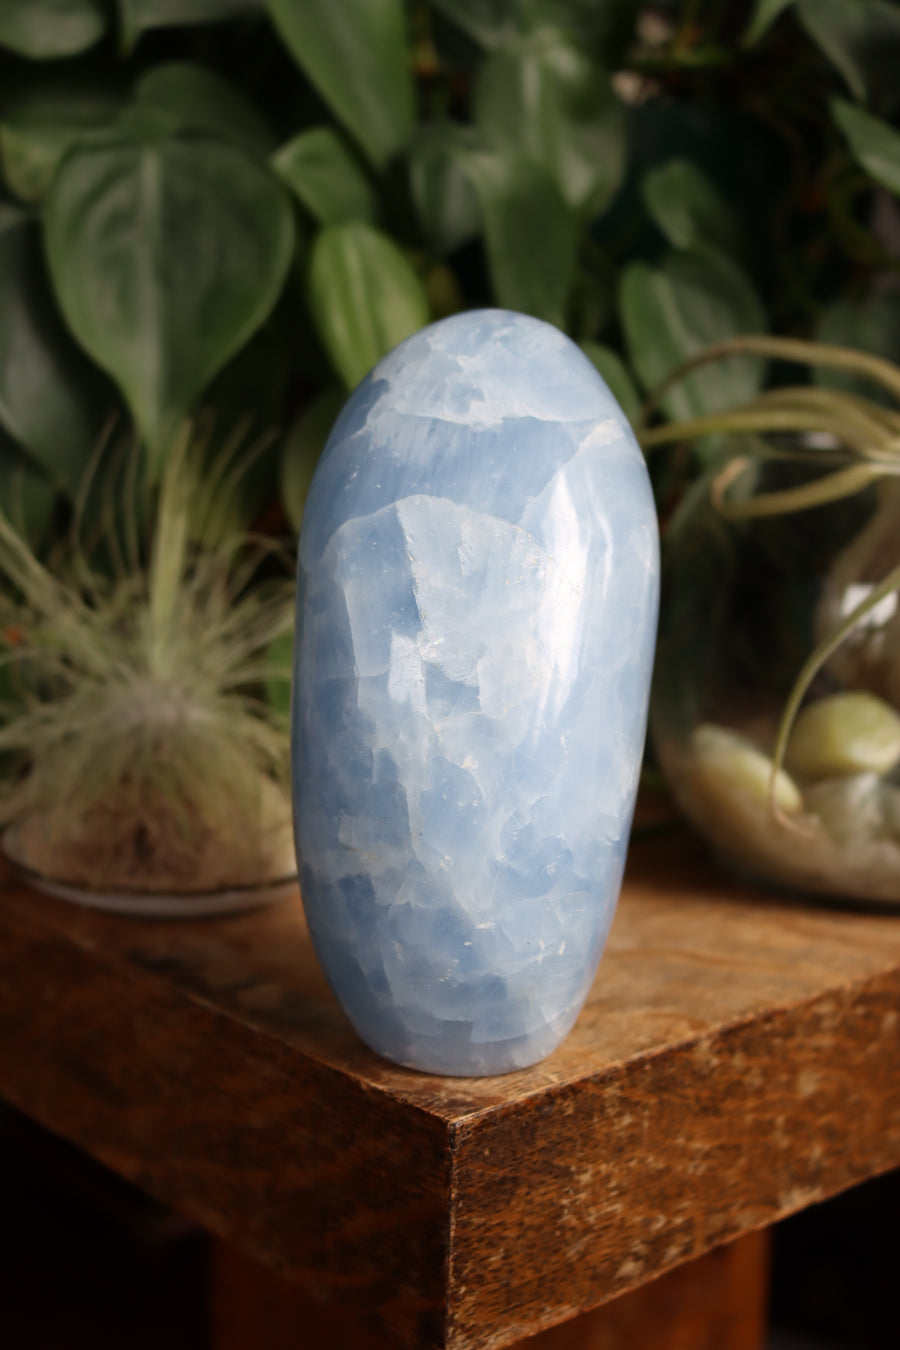 Blue calcite free form 1